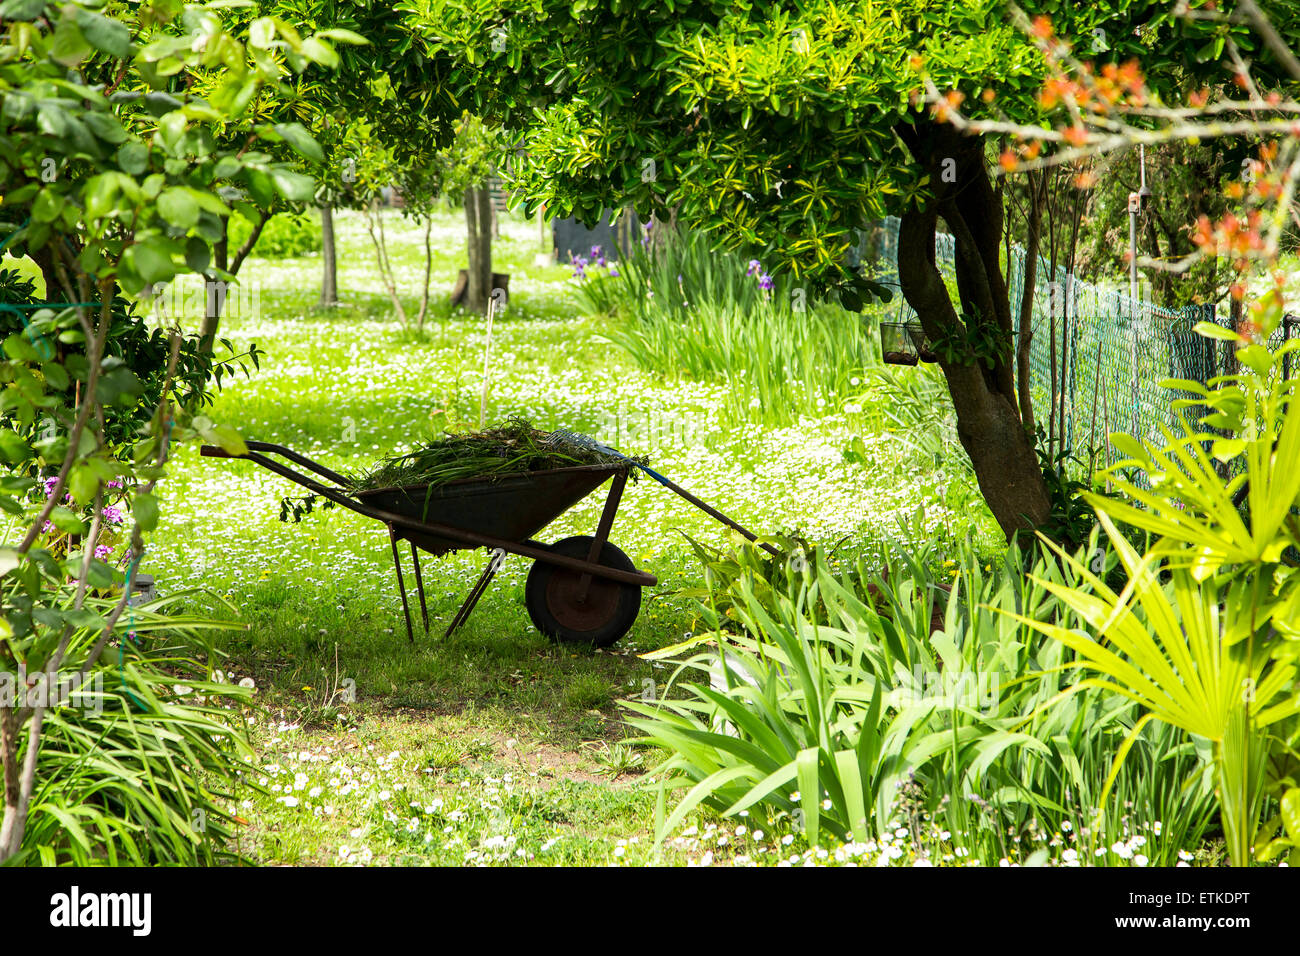 Jardinería, carretilla con herramientas de jardinería en un verde jardín con árboles frutales rural todo alrededor en un soleado día de primavera Foto de stock